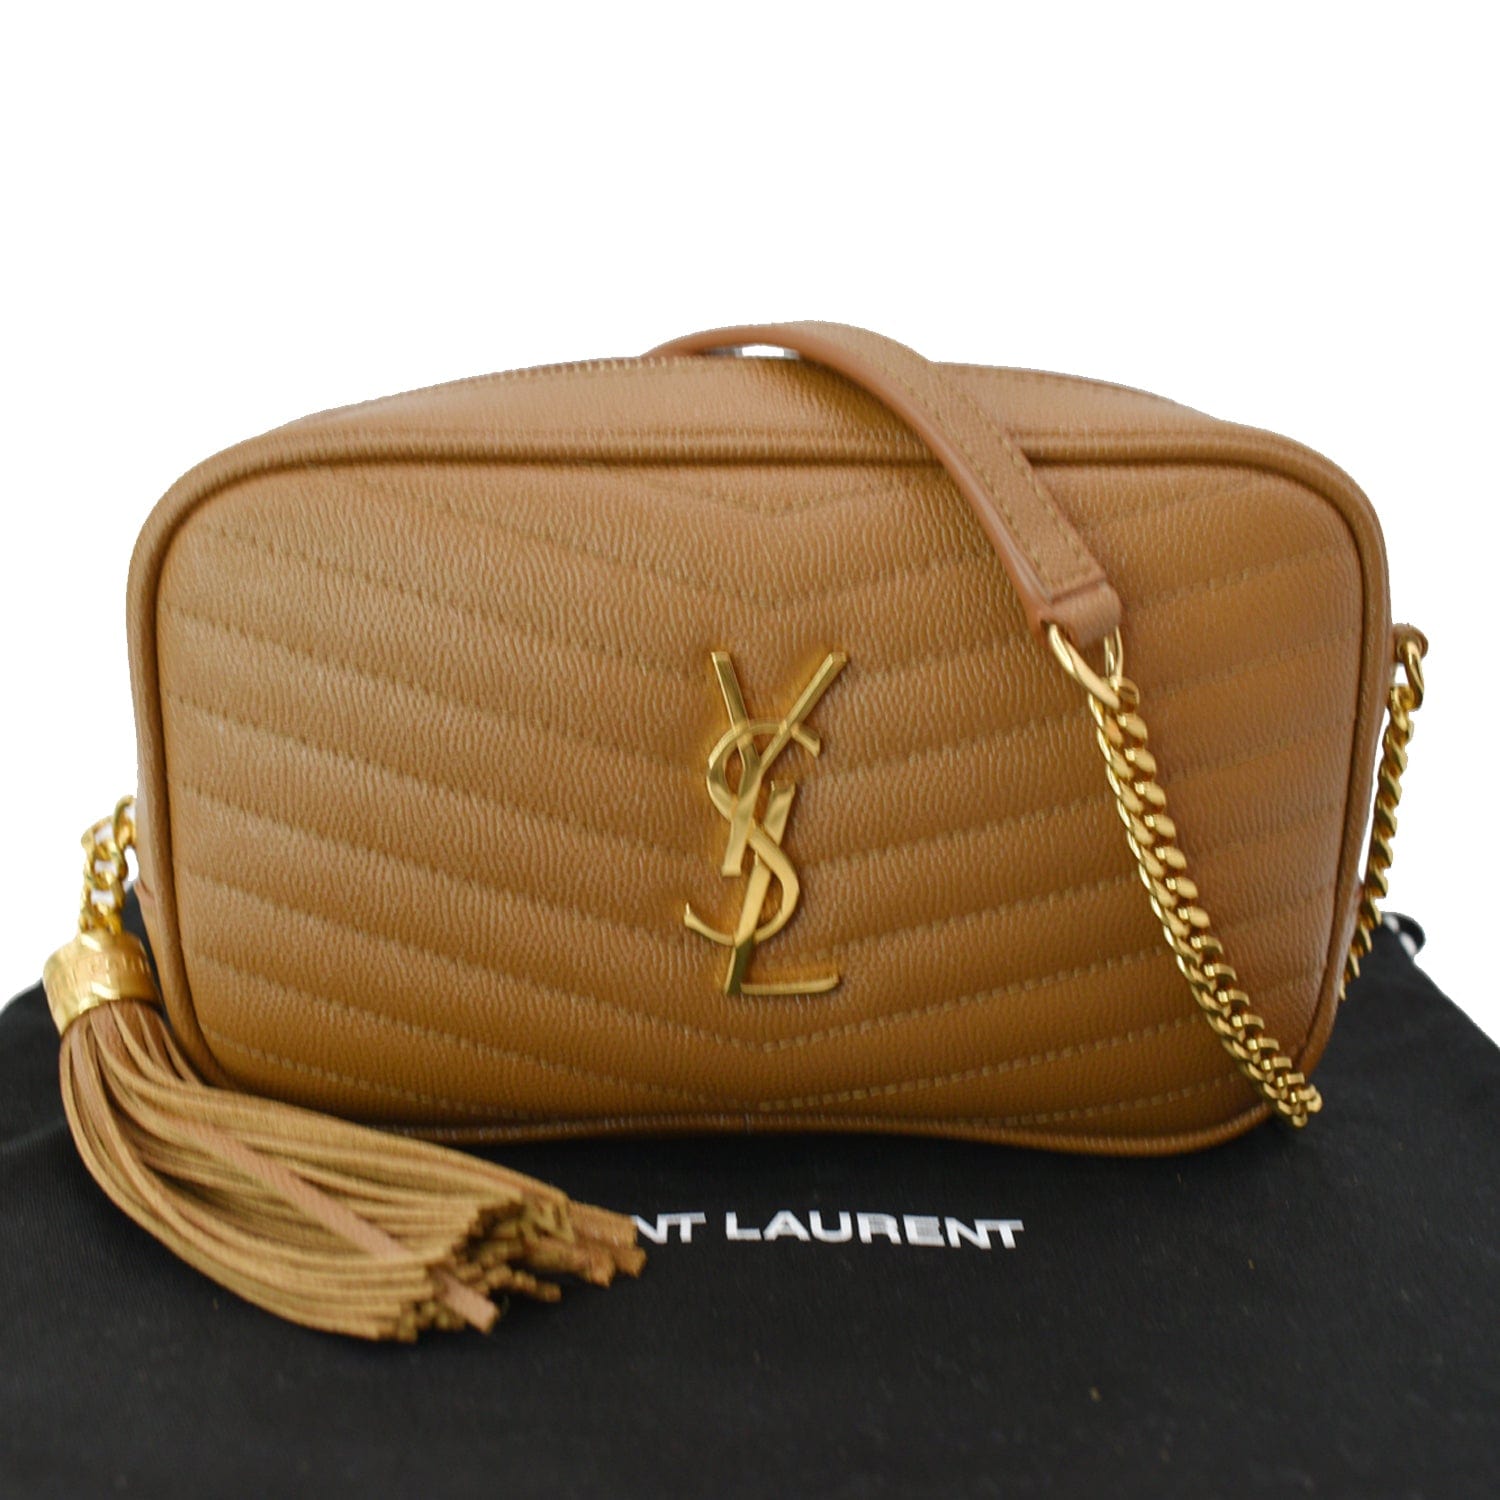 Saint Laurent - Mini Lou Bag - Women - Leather - One Size - Brown